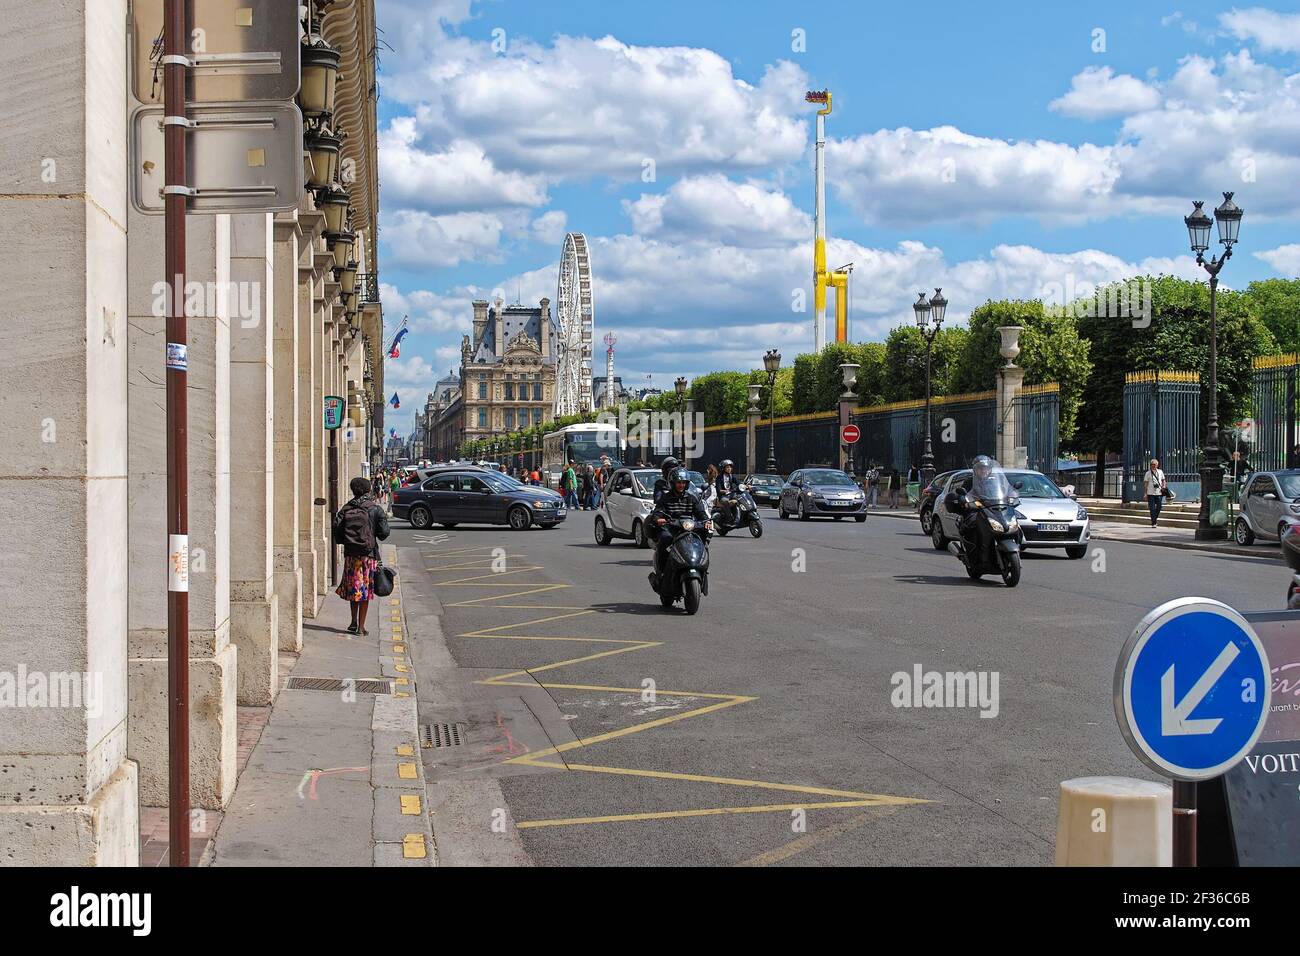 Paris, France, JUIN 22 : vue sur la rue de Rivoli et le jardin des Tuileries avec une roue de ferris le 22 juin 2012 à Paris. Banque D'Images